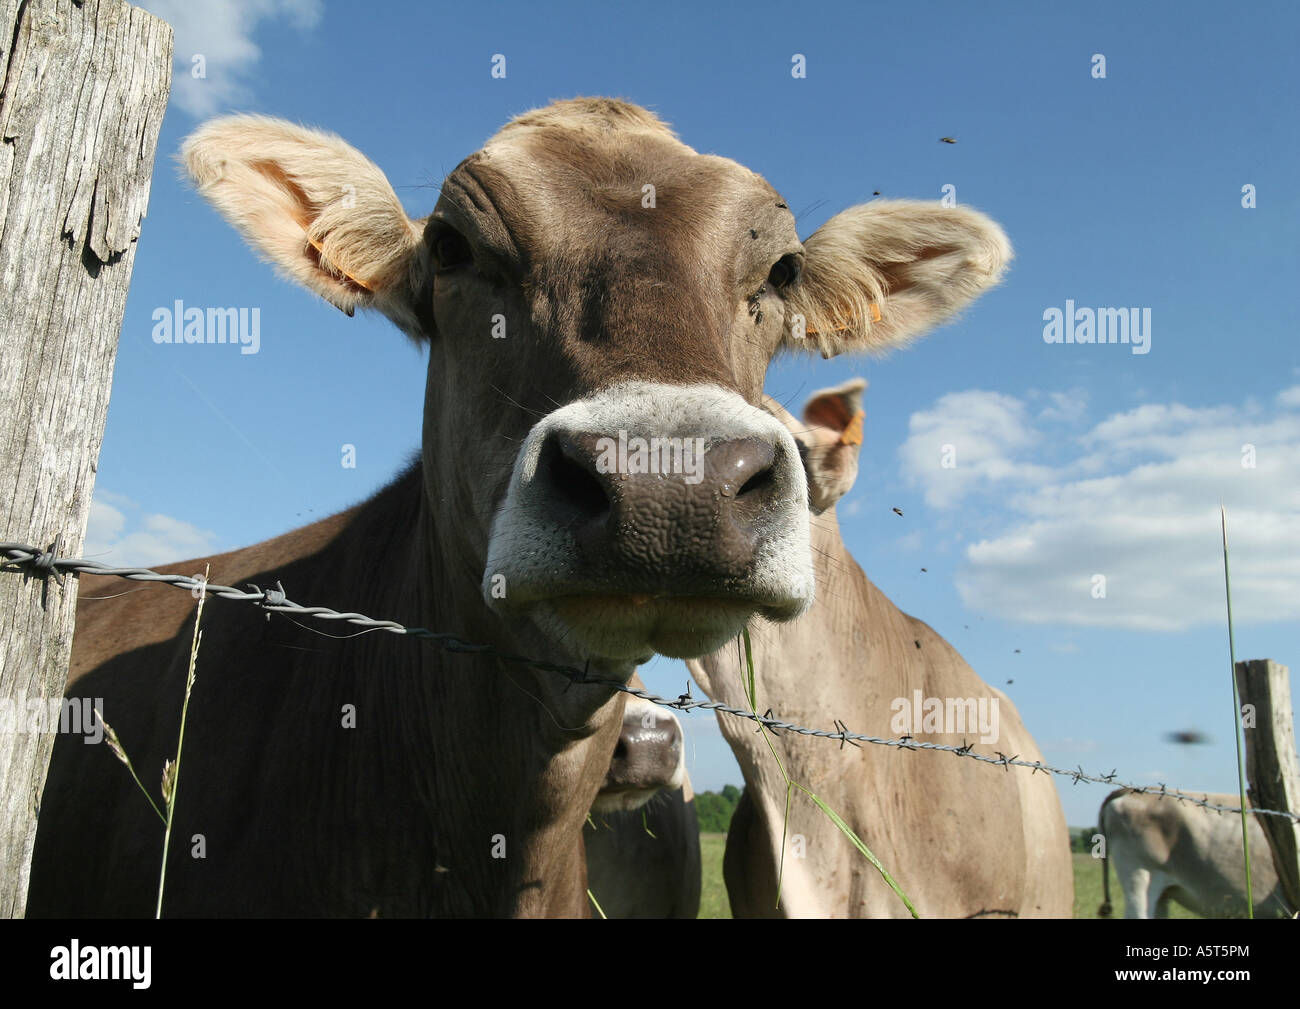 Brown mucca svizzera guardando oltre il recinto di filo spinato, close-up Foto Stock